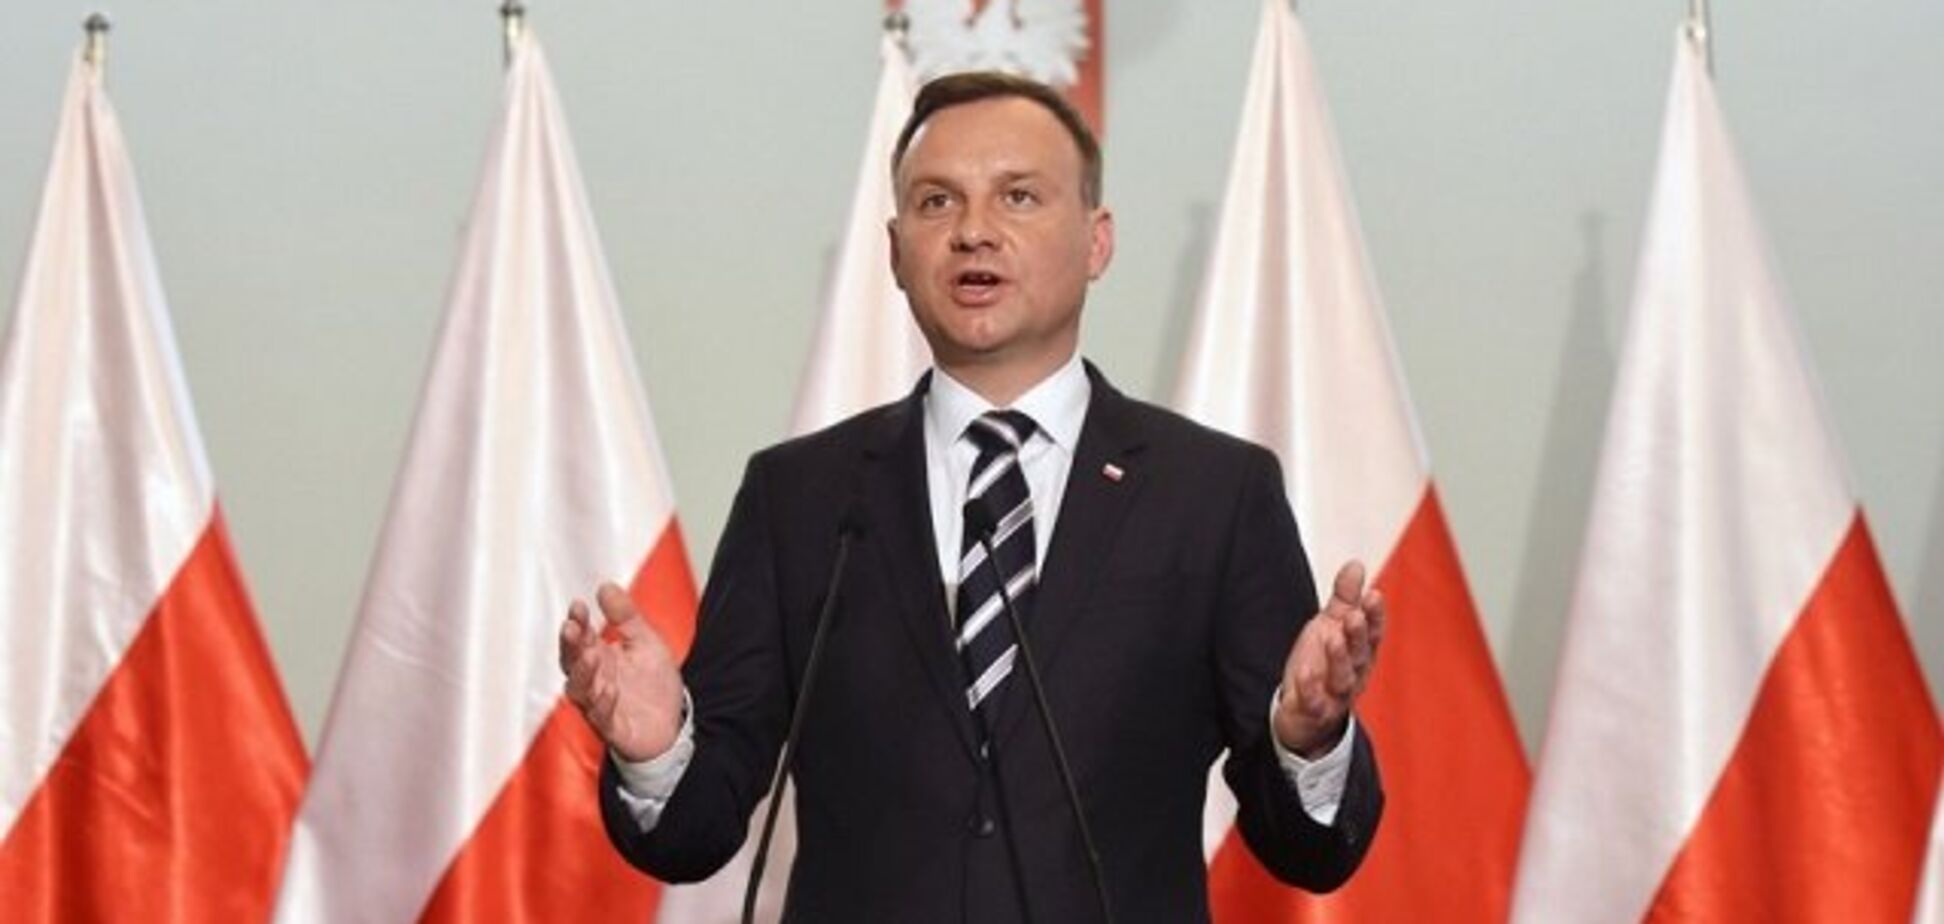 'Не успокоились после краха СССР': президент Польши назвал Россию самой большой мировой угрозой